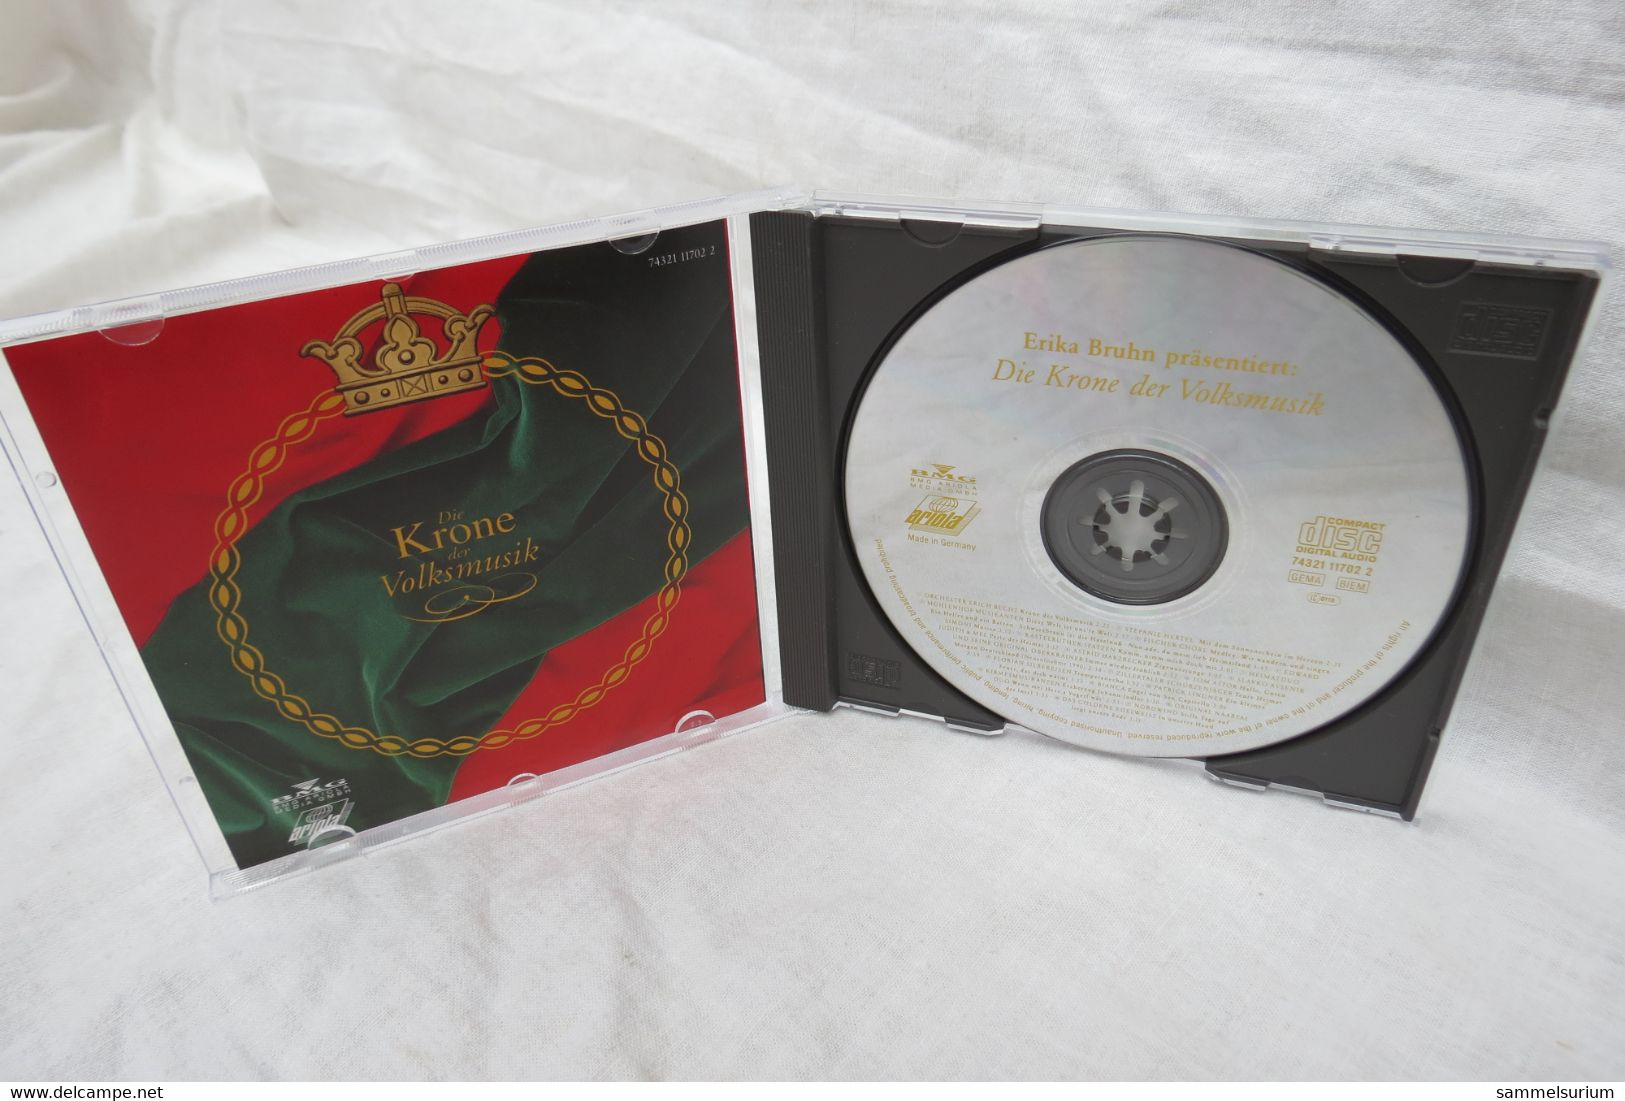 CD "Die Krone Der Volksmusik" Präsentiert Von Erika Bruhn - Other - German Music